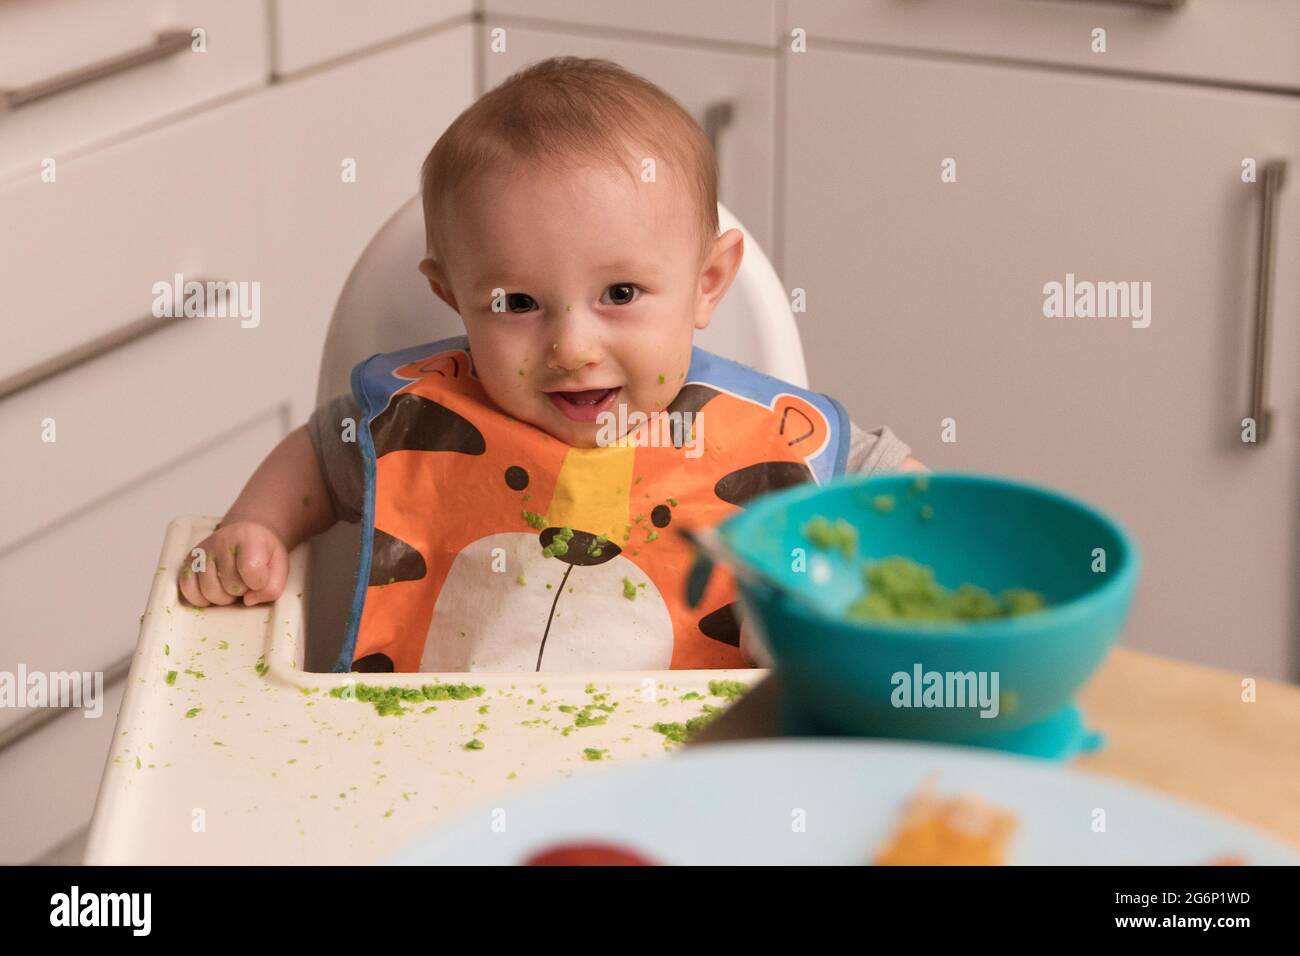 Un bébé de 6 mois mangeant de la nourriture dans une chaise haute Banque D'Images